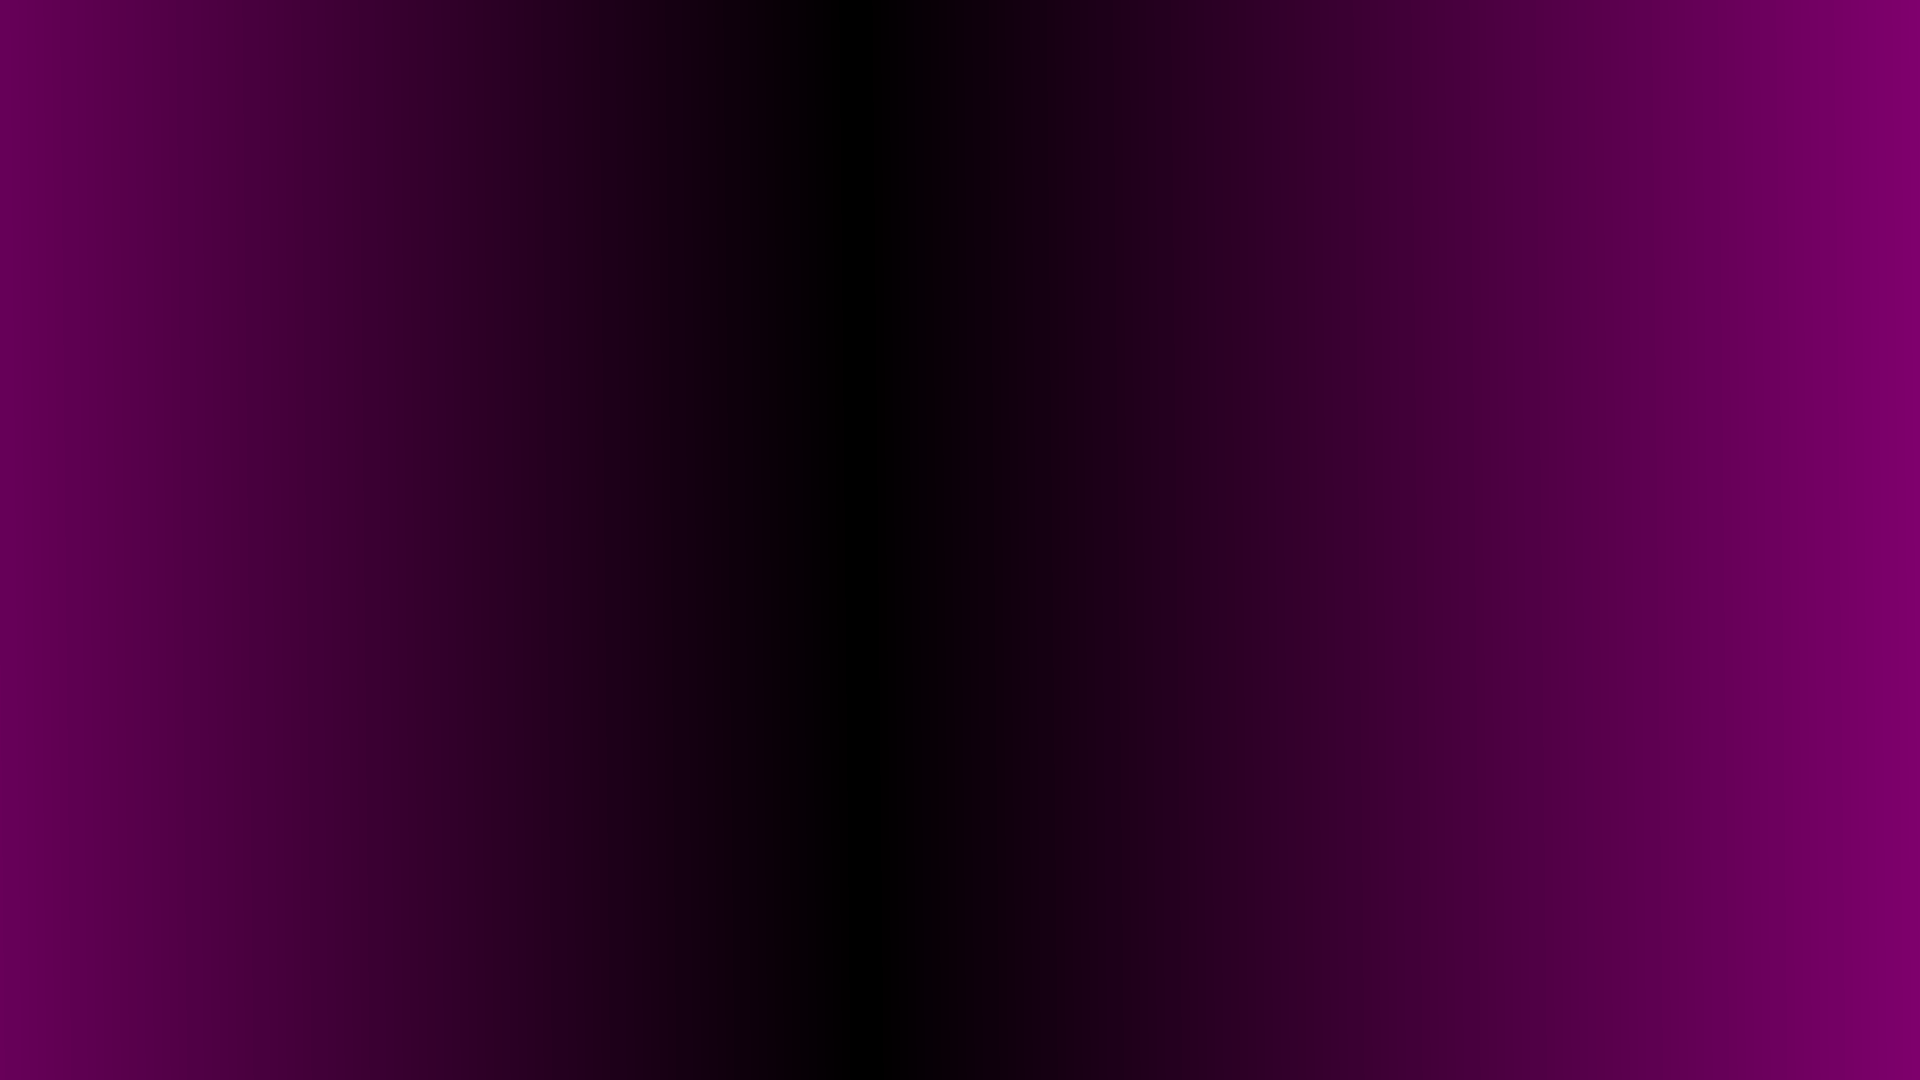 desktop wallpaper gradient pink black desktop 1920x1080